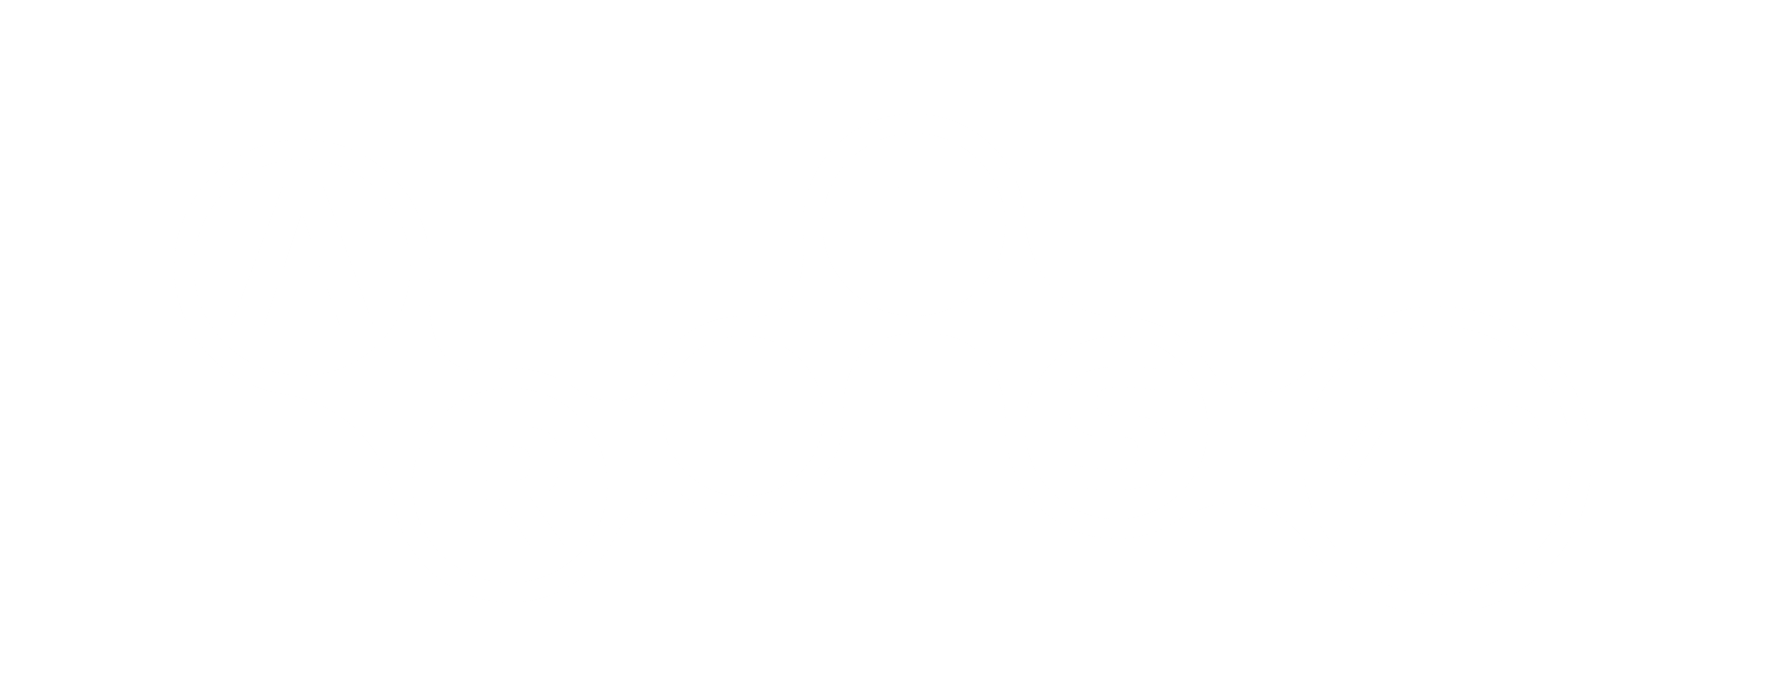 Logo_ARTES4.0_Neg_20190313